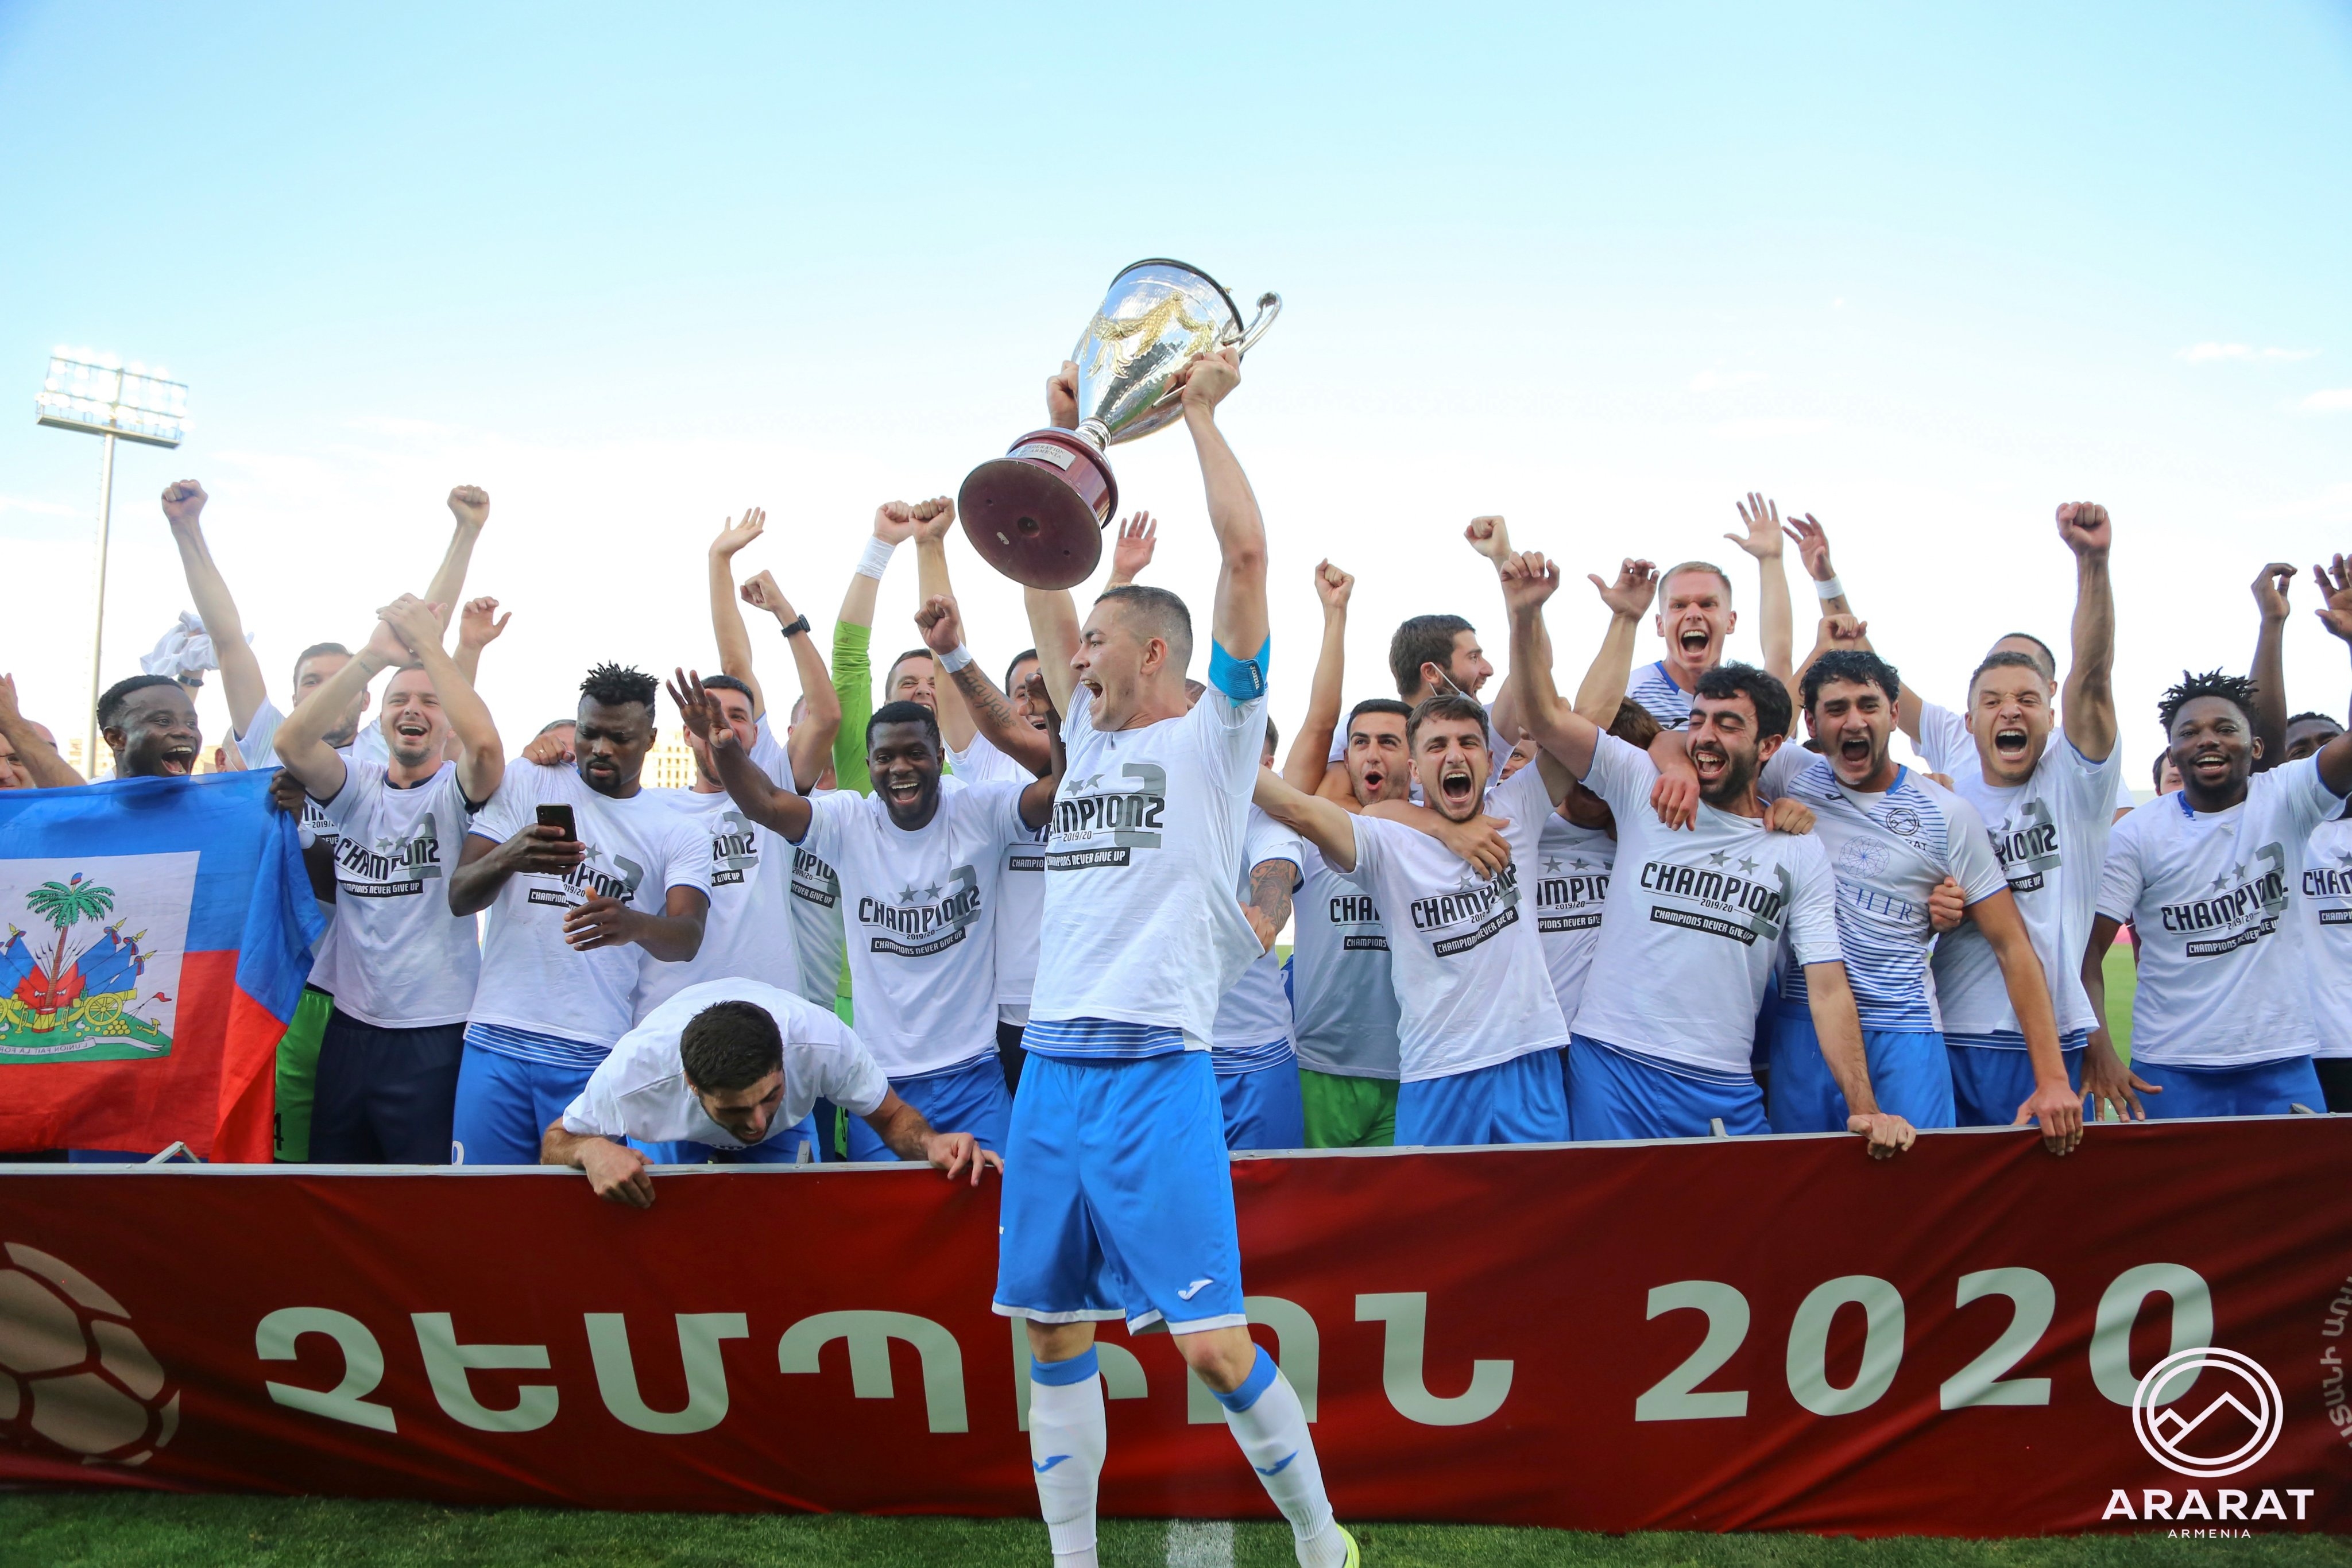 Арарат Армения стана шампион в Армения за втора поредна година В